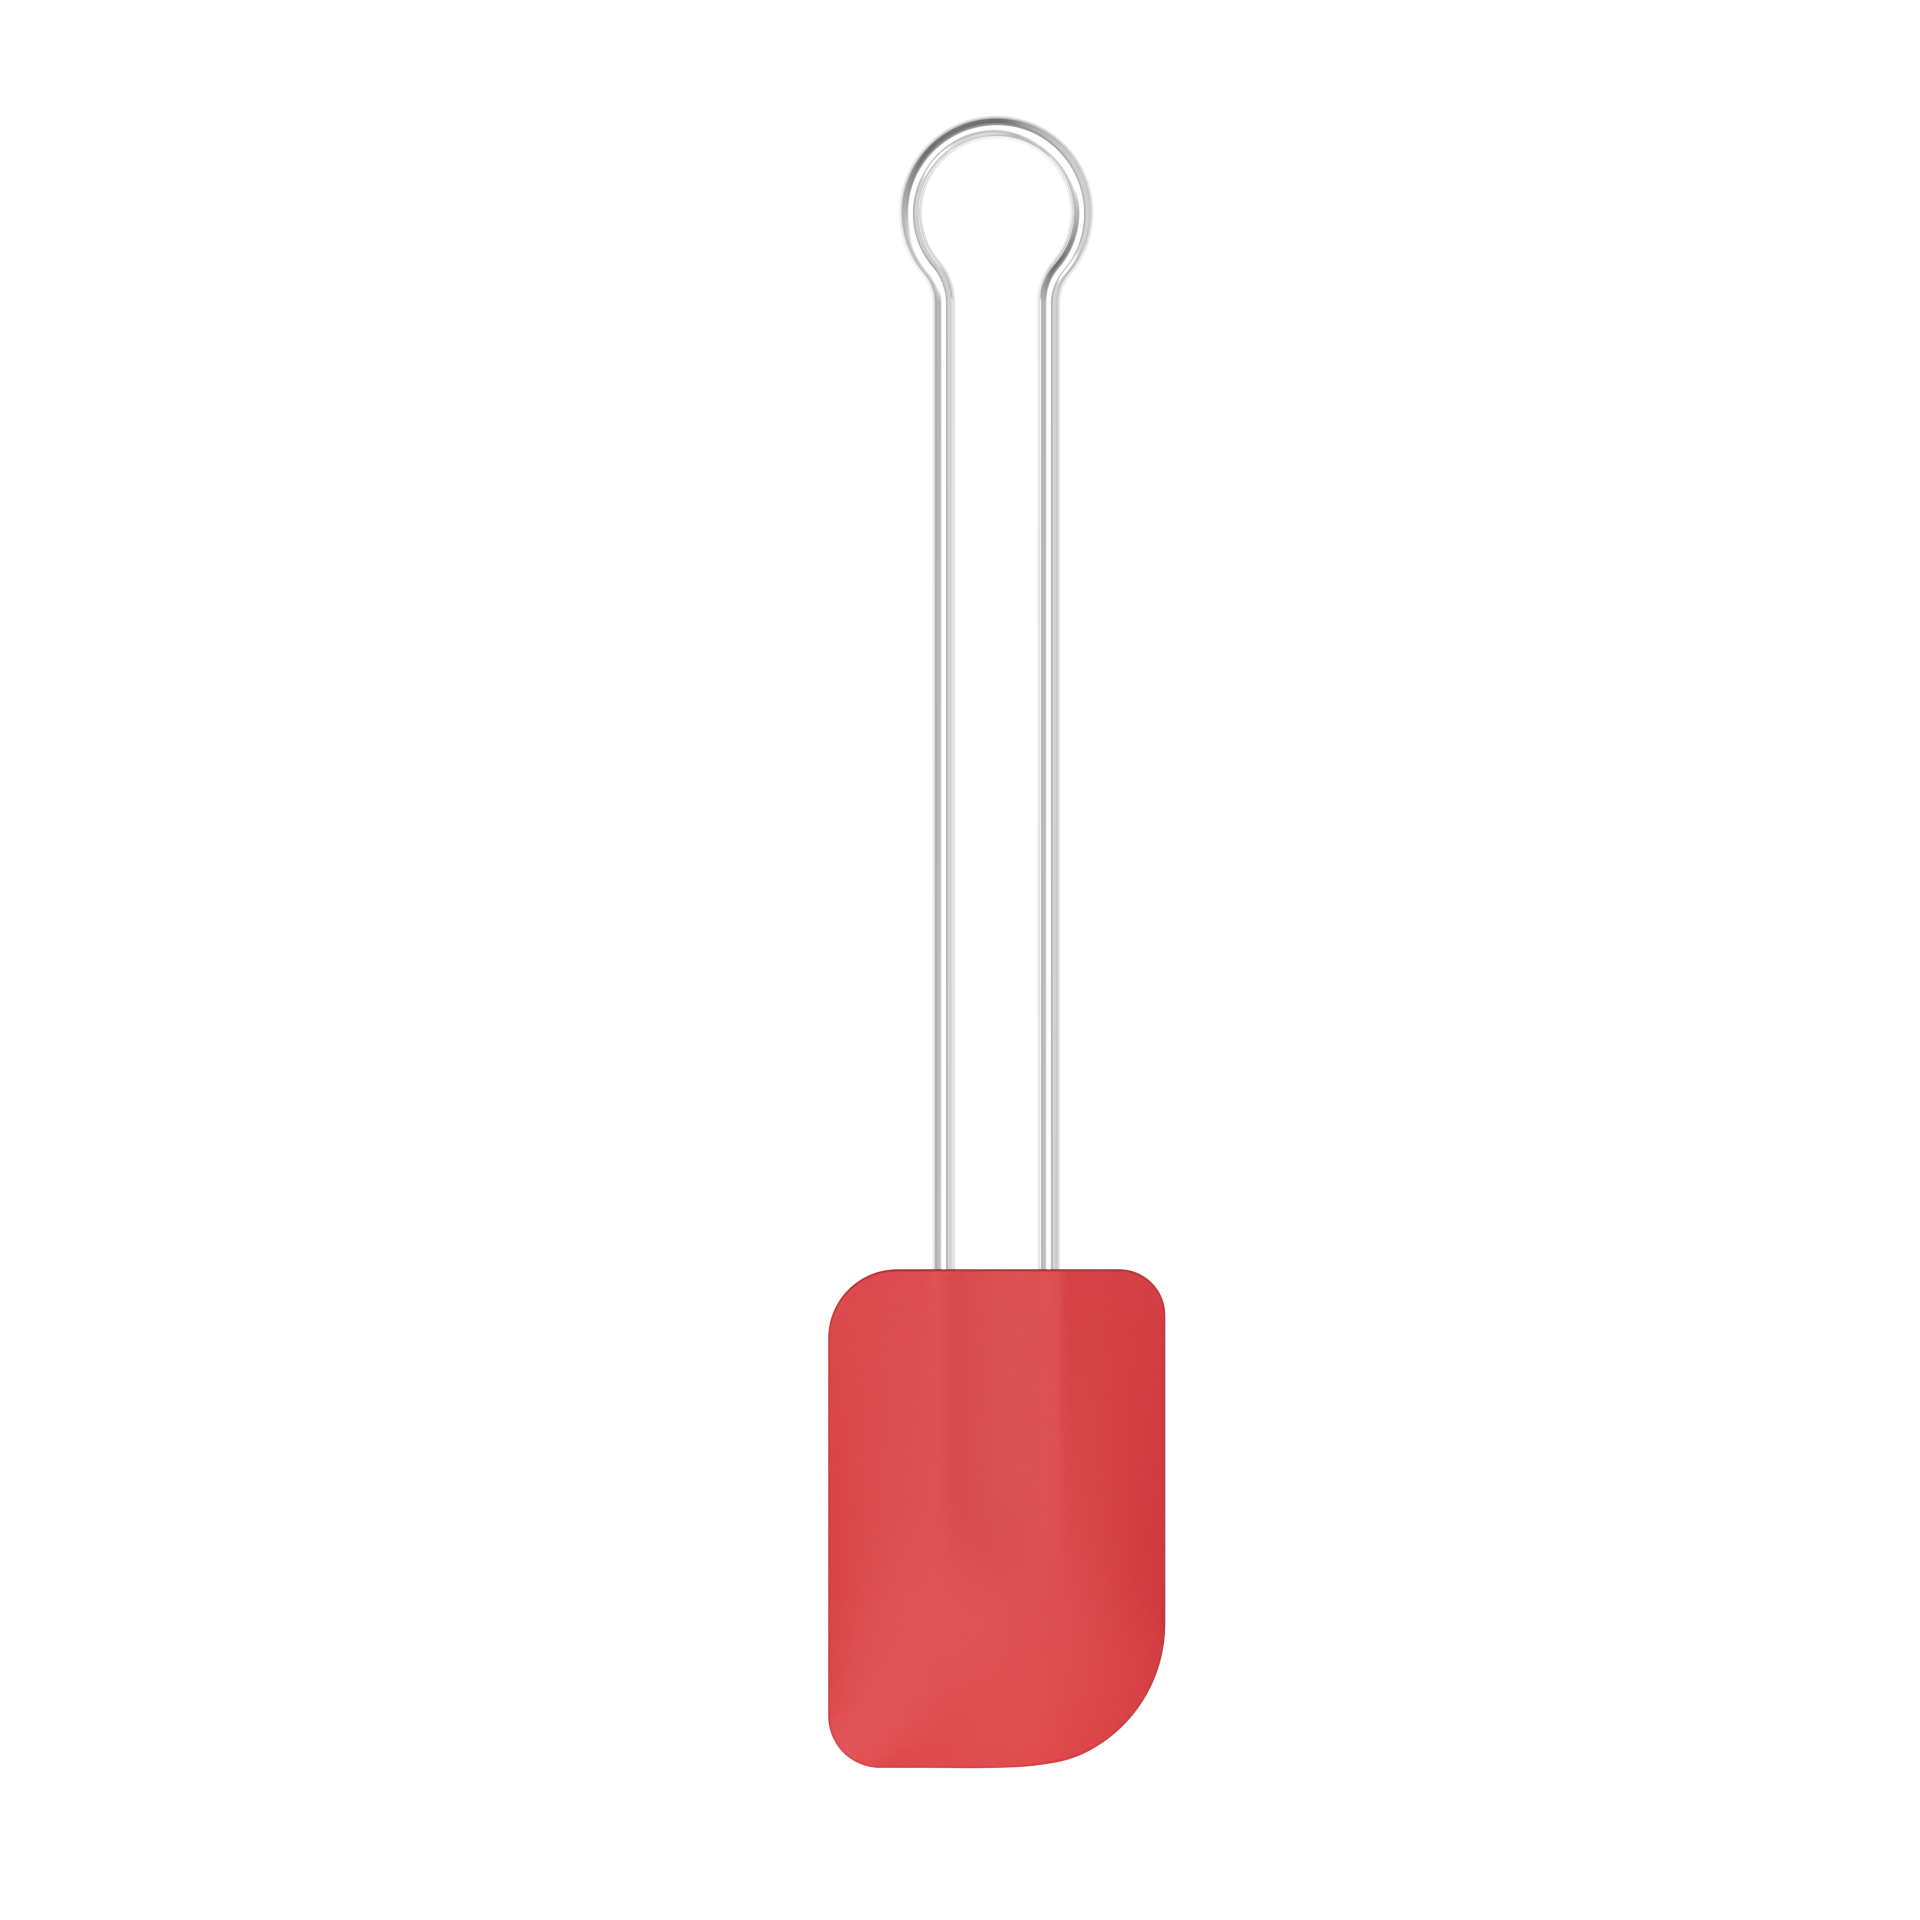 Teigschaber Kochblume groß L | Silikon, rot mit Edelstahlgriff 260° hitzebeständig flexibler Kopf für alle Lebensmittel für die Bratpfanne